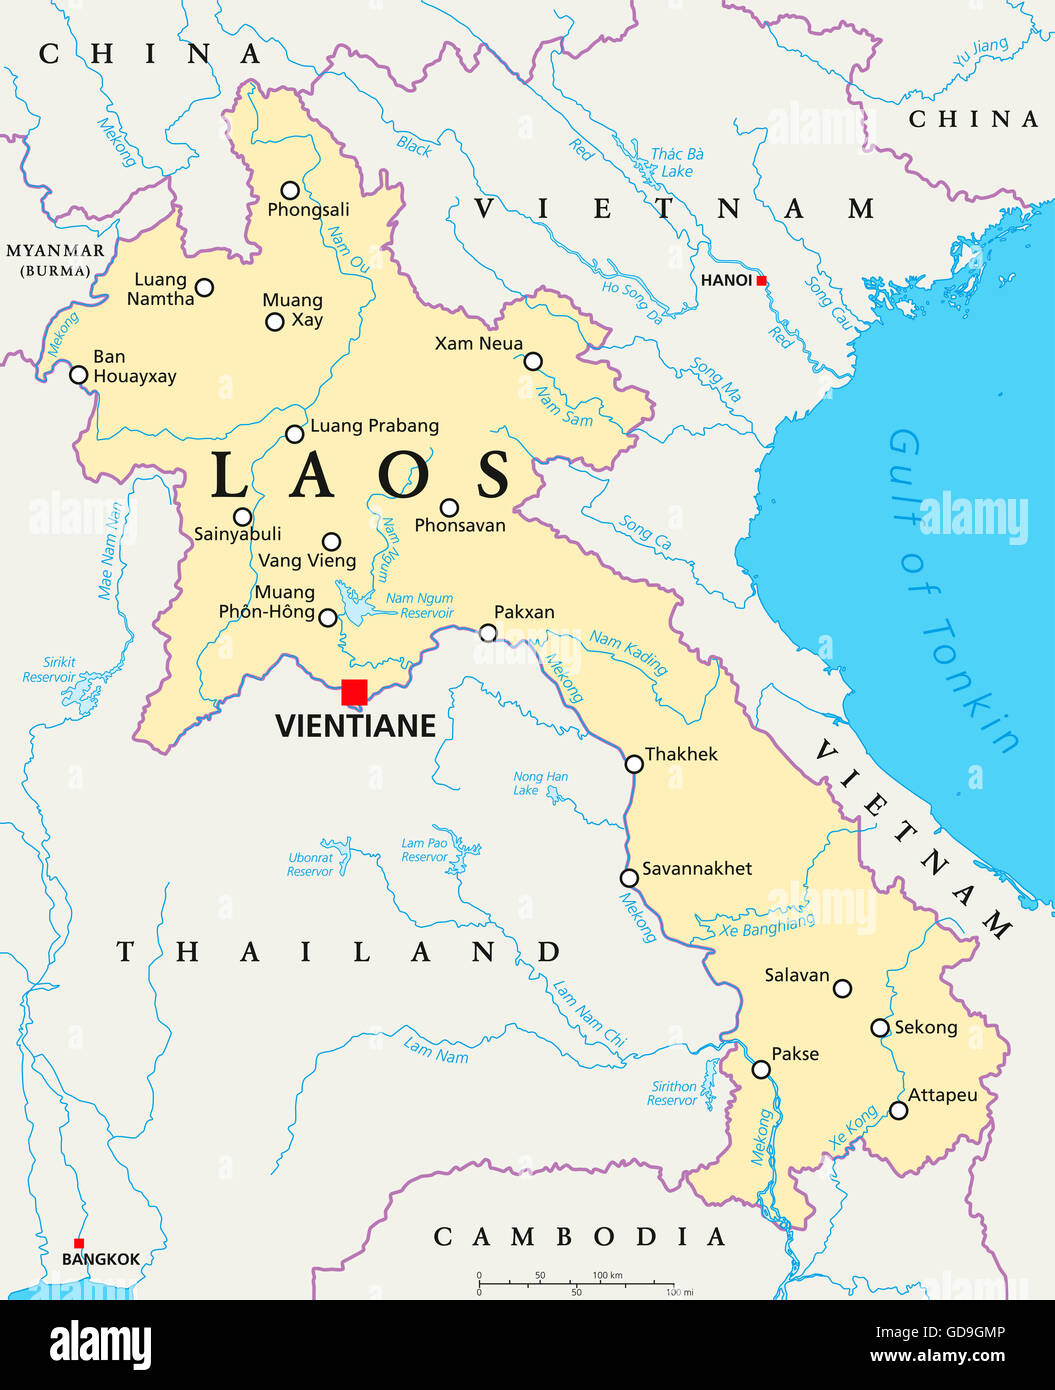 Laos mappa politico con capitale Vientiane, confini nazionali importanti città, fiumi e laghi. Noto anche come Muang Lao. Foto Stock